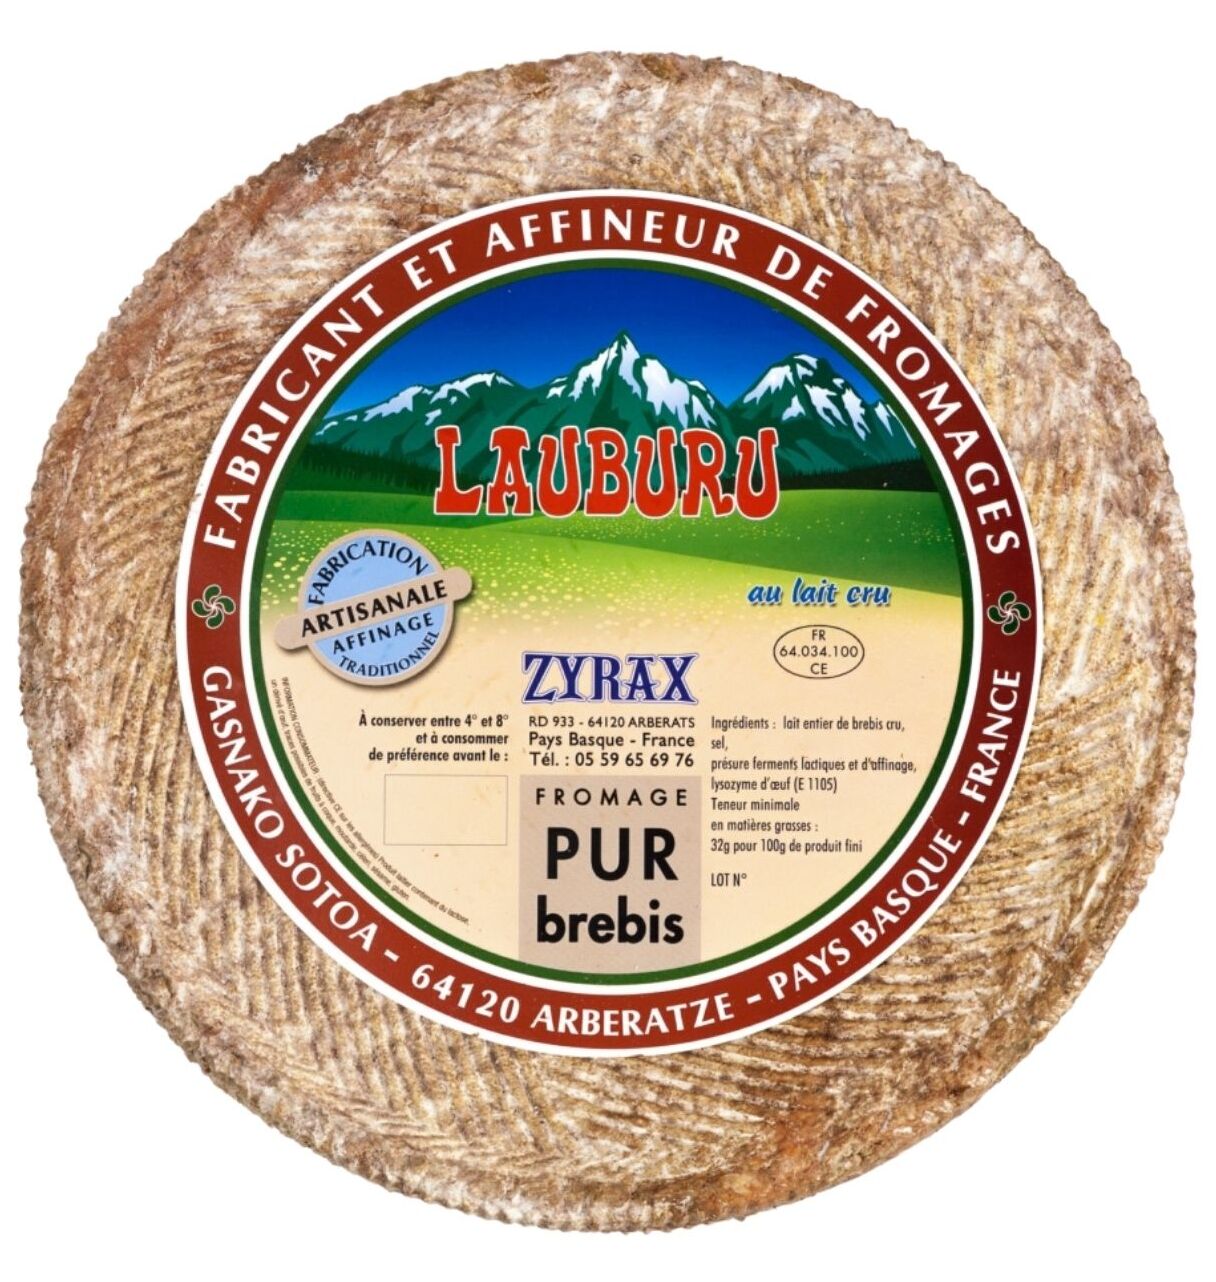 Brebis au Lait cru-zyrax fromage-www.luxfood-shop.fr - copie